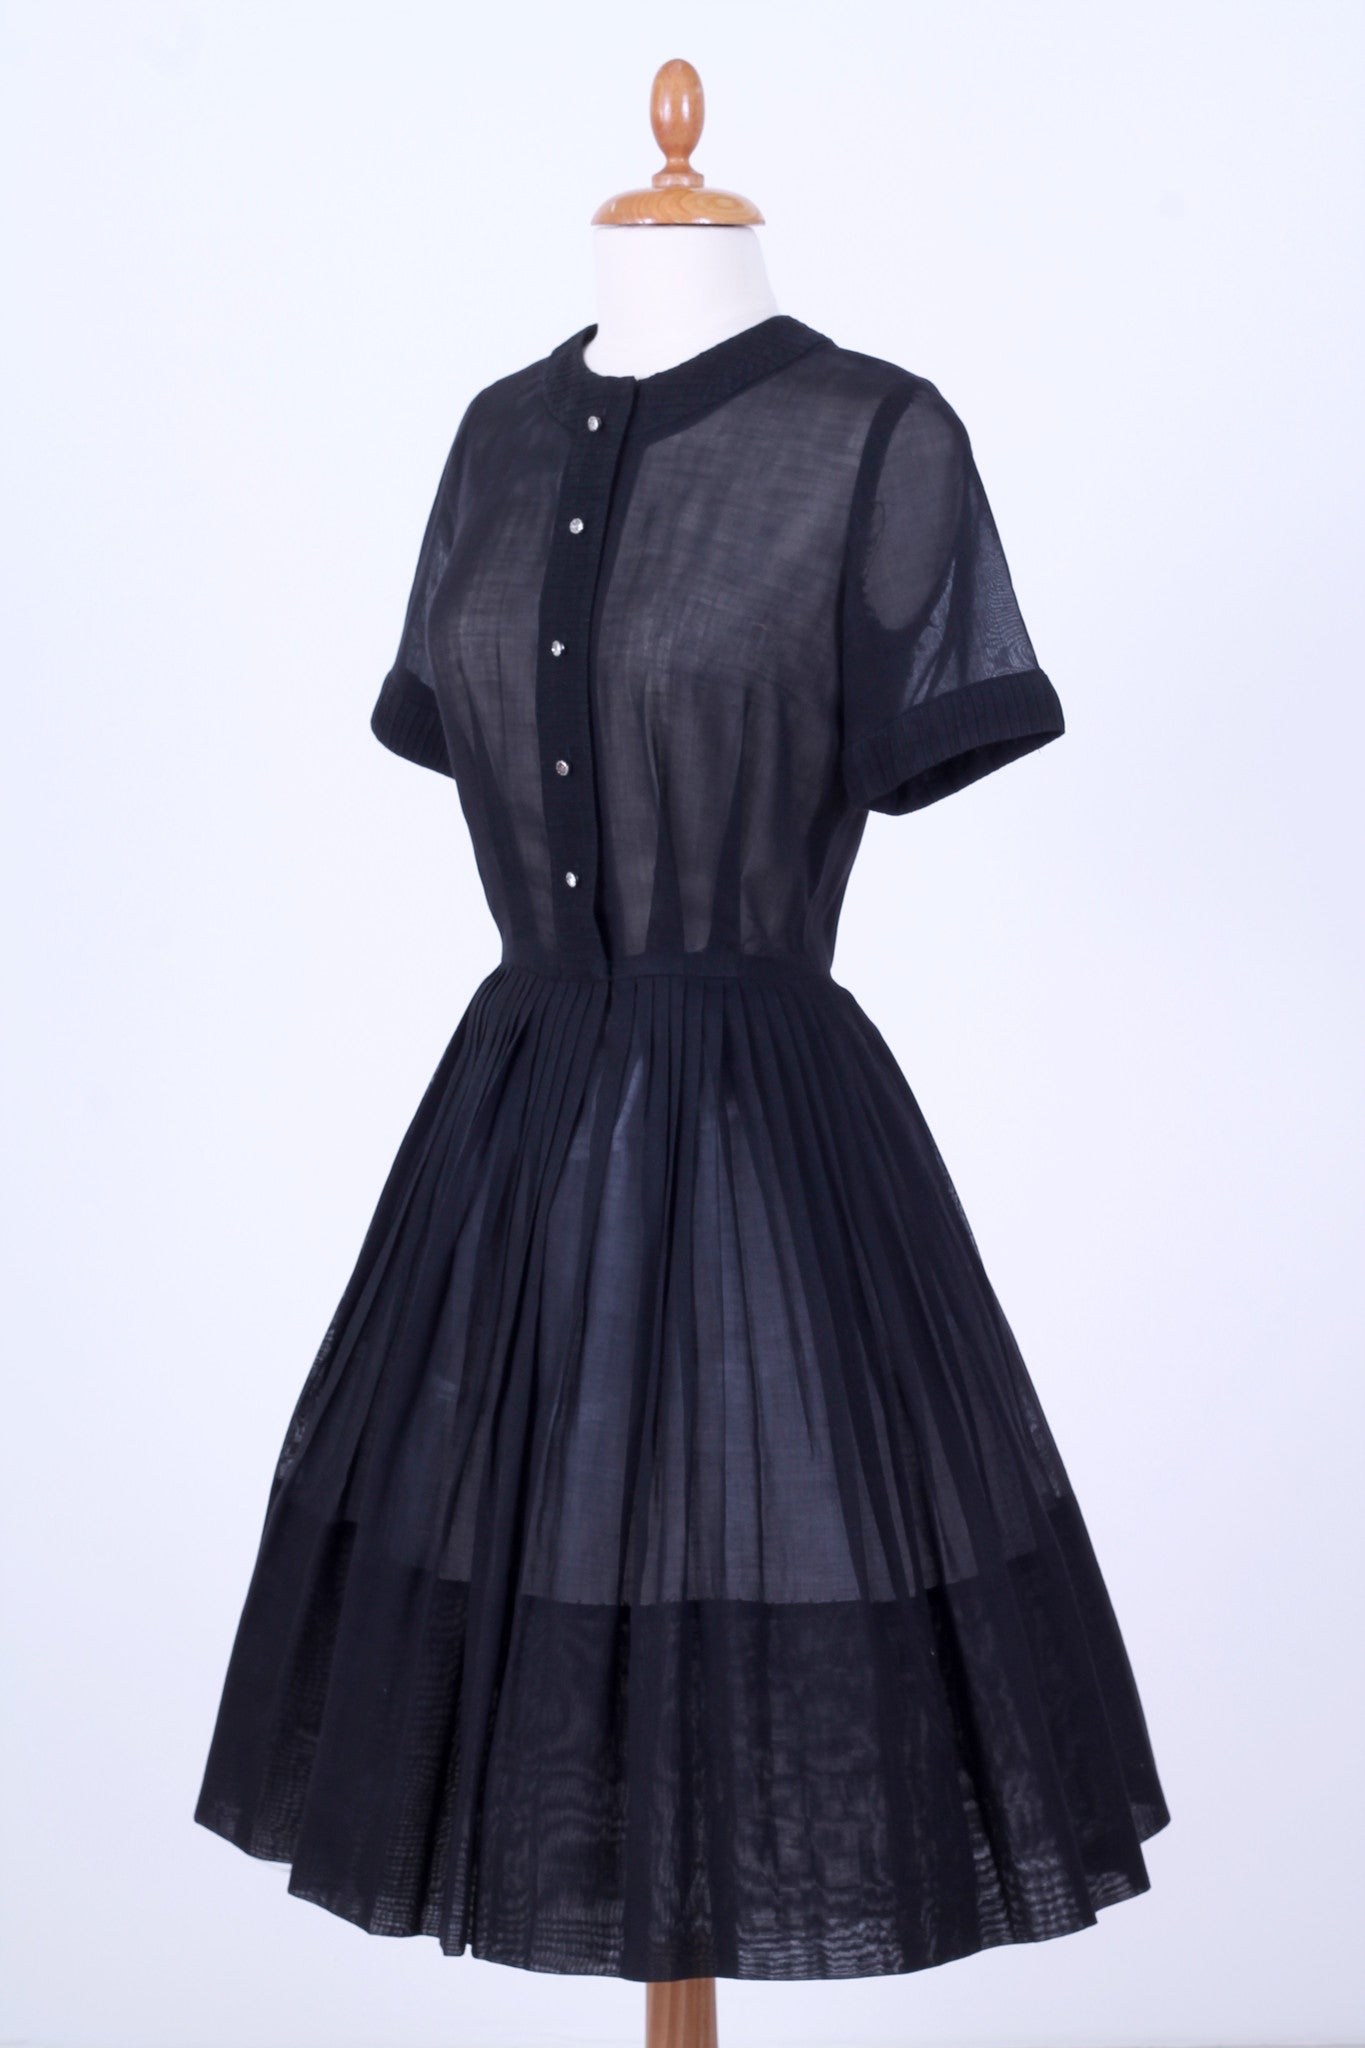 Solgt vintage tøj - Sort hverdagskjole i organza 1950. XS-S - solgt - Vintage Divine - 2